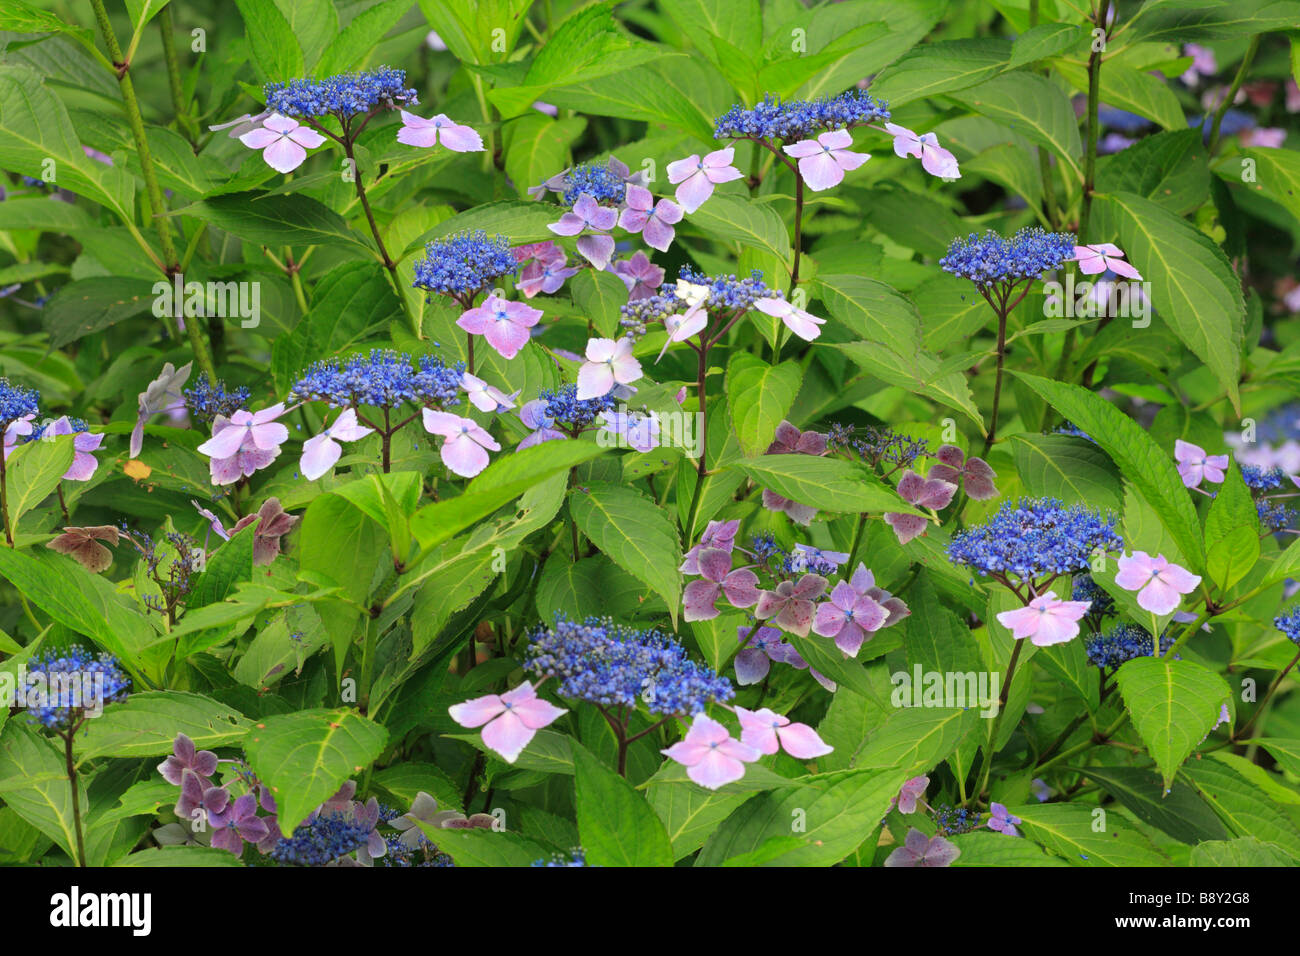 Blumen von Lacecap-Hortensien (Hydrangea Macrophylla) "Blaue Welle". Garten Strauch. Stockfoto